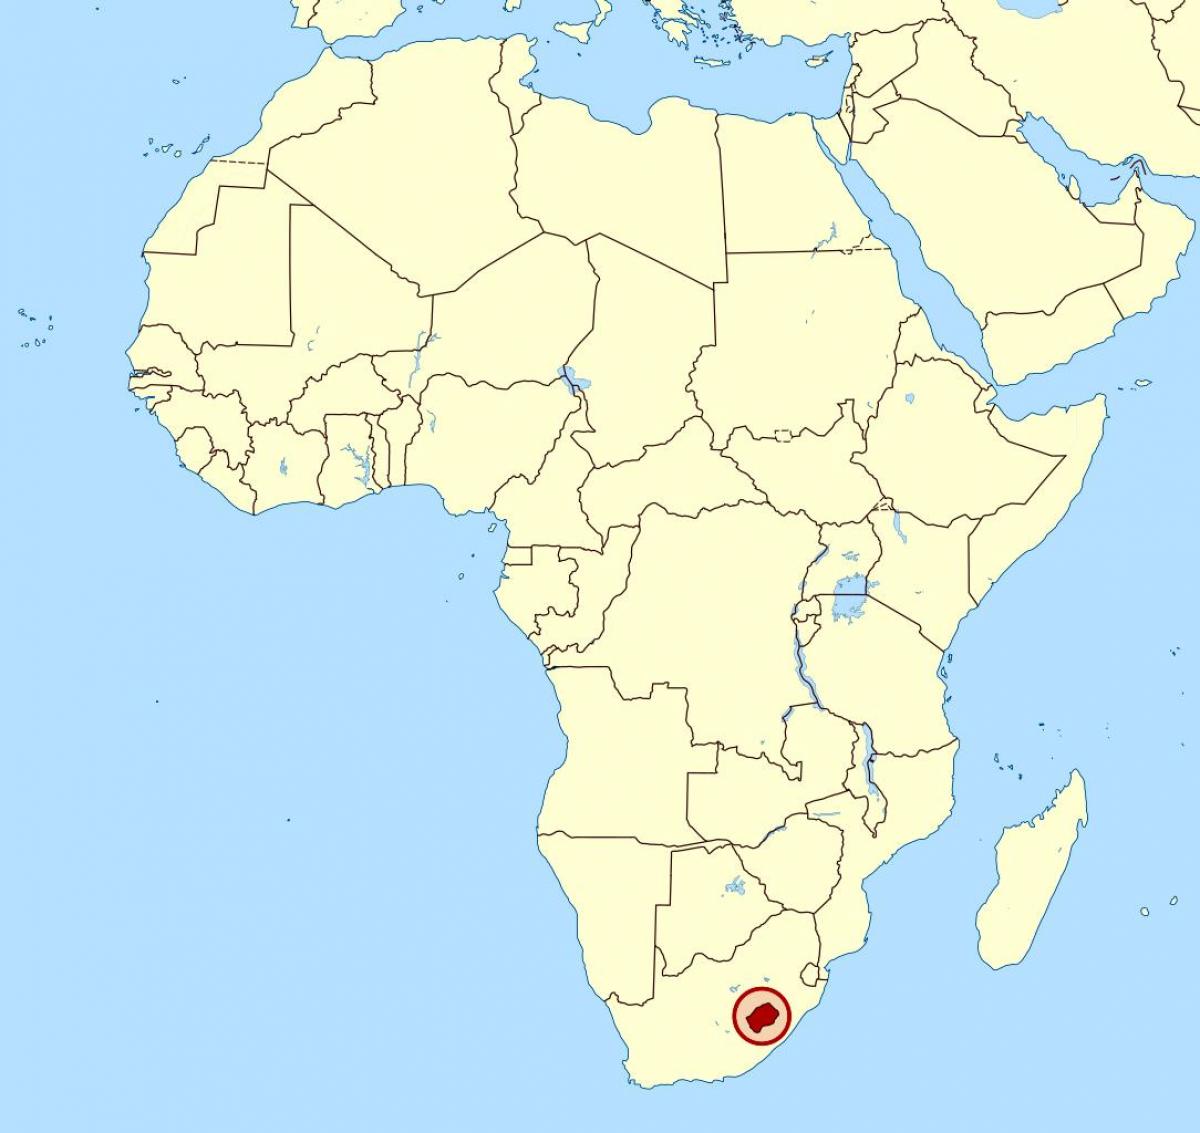 Լեսոտո Աֆրիկայում քարտեզի վրա